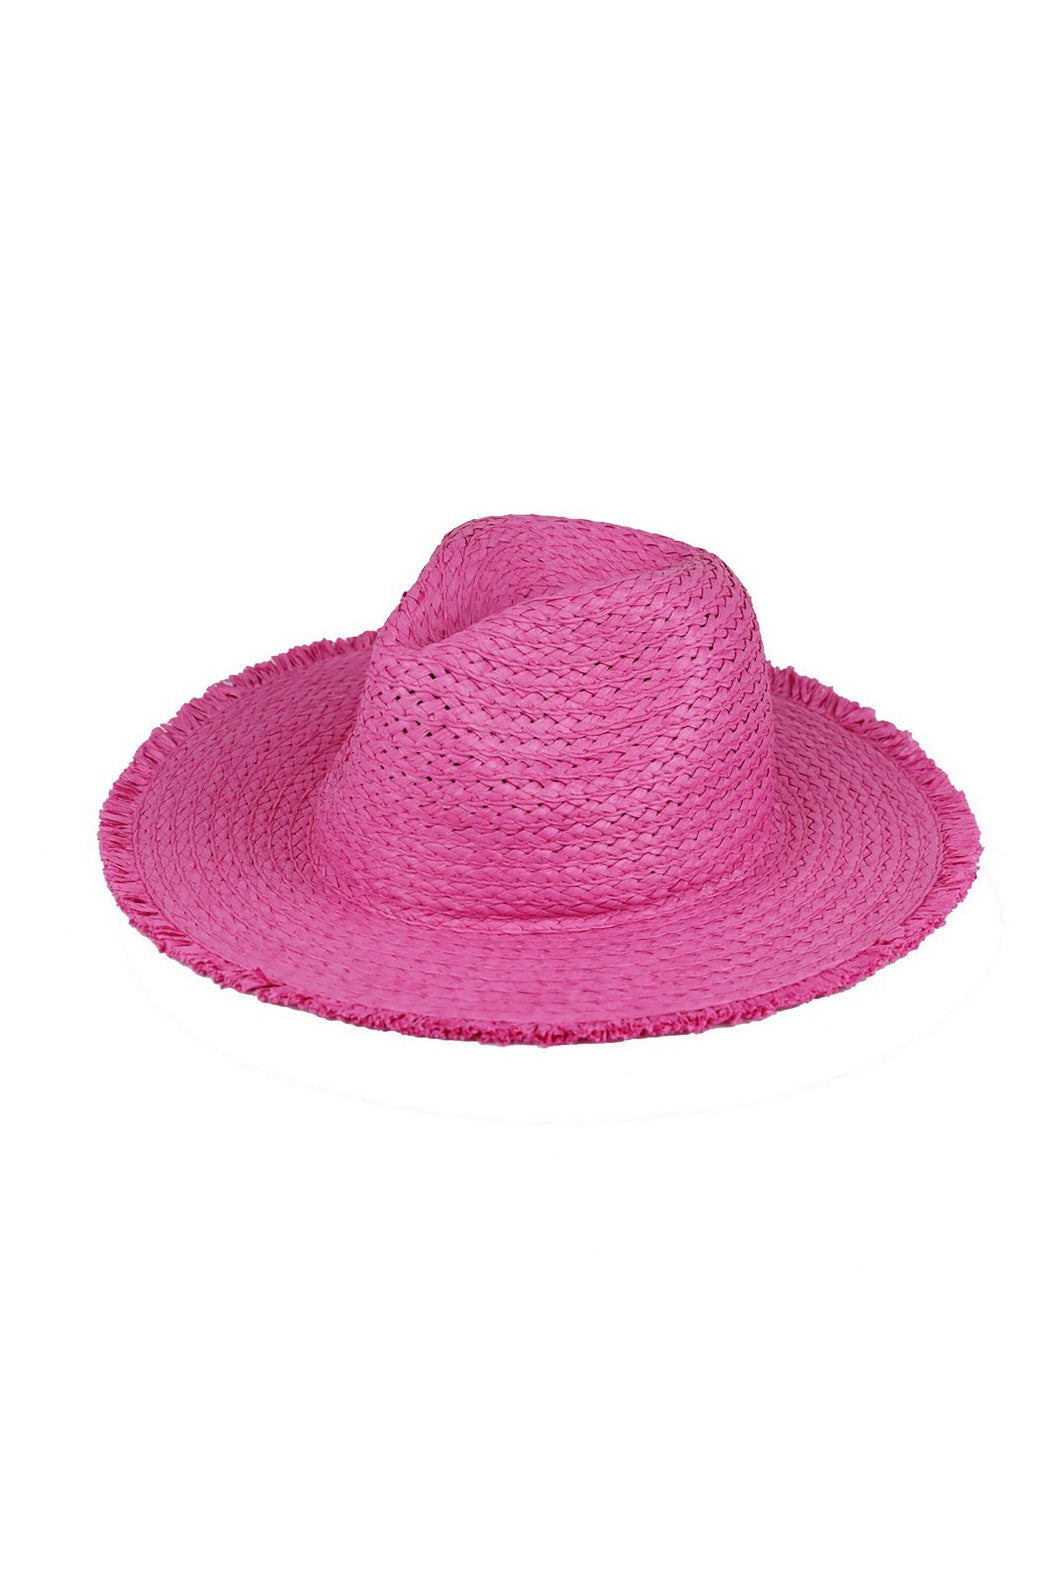 Straw Fringed Panama Hat by Embellish Your Life